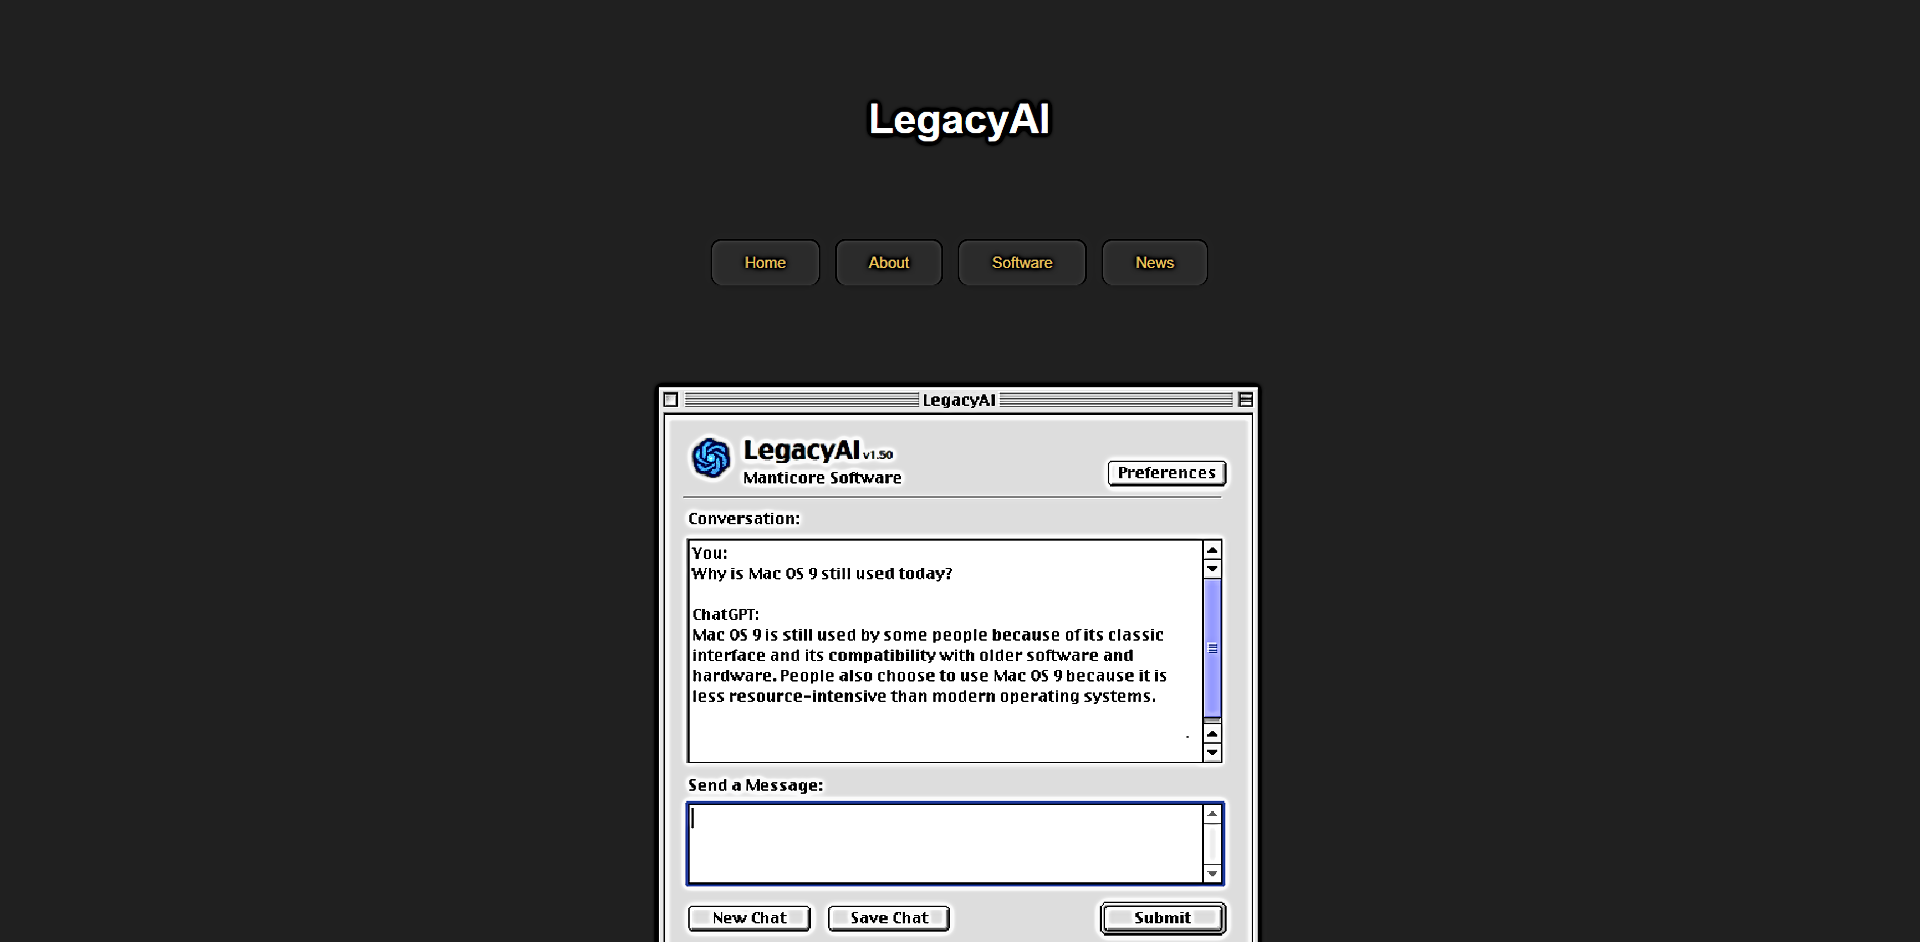 Legacy AI featured